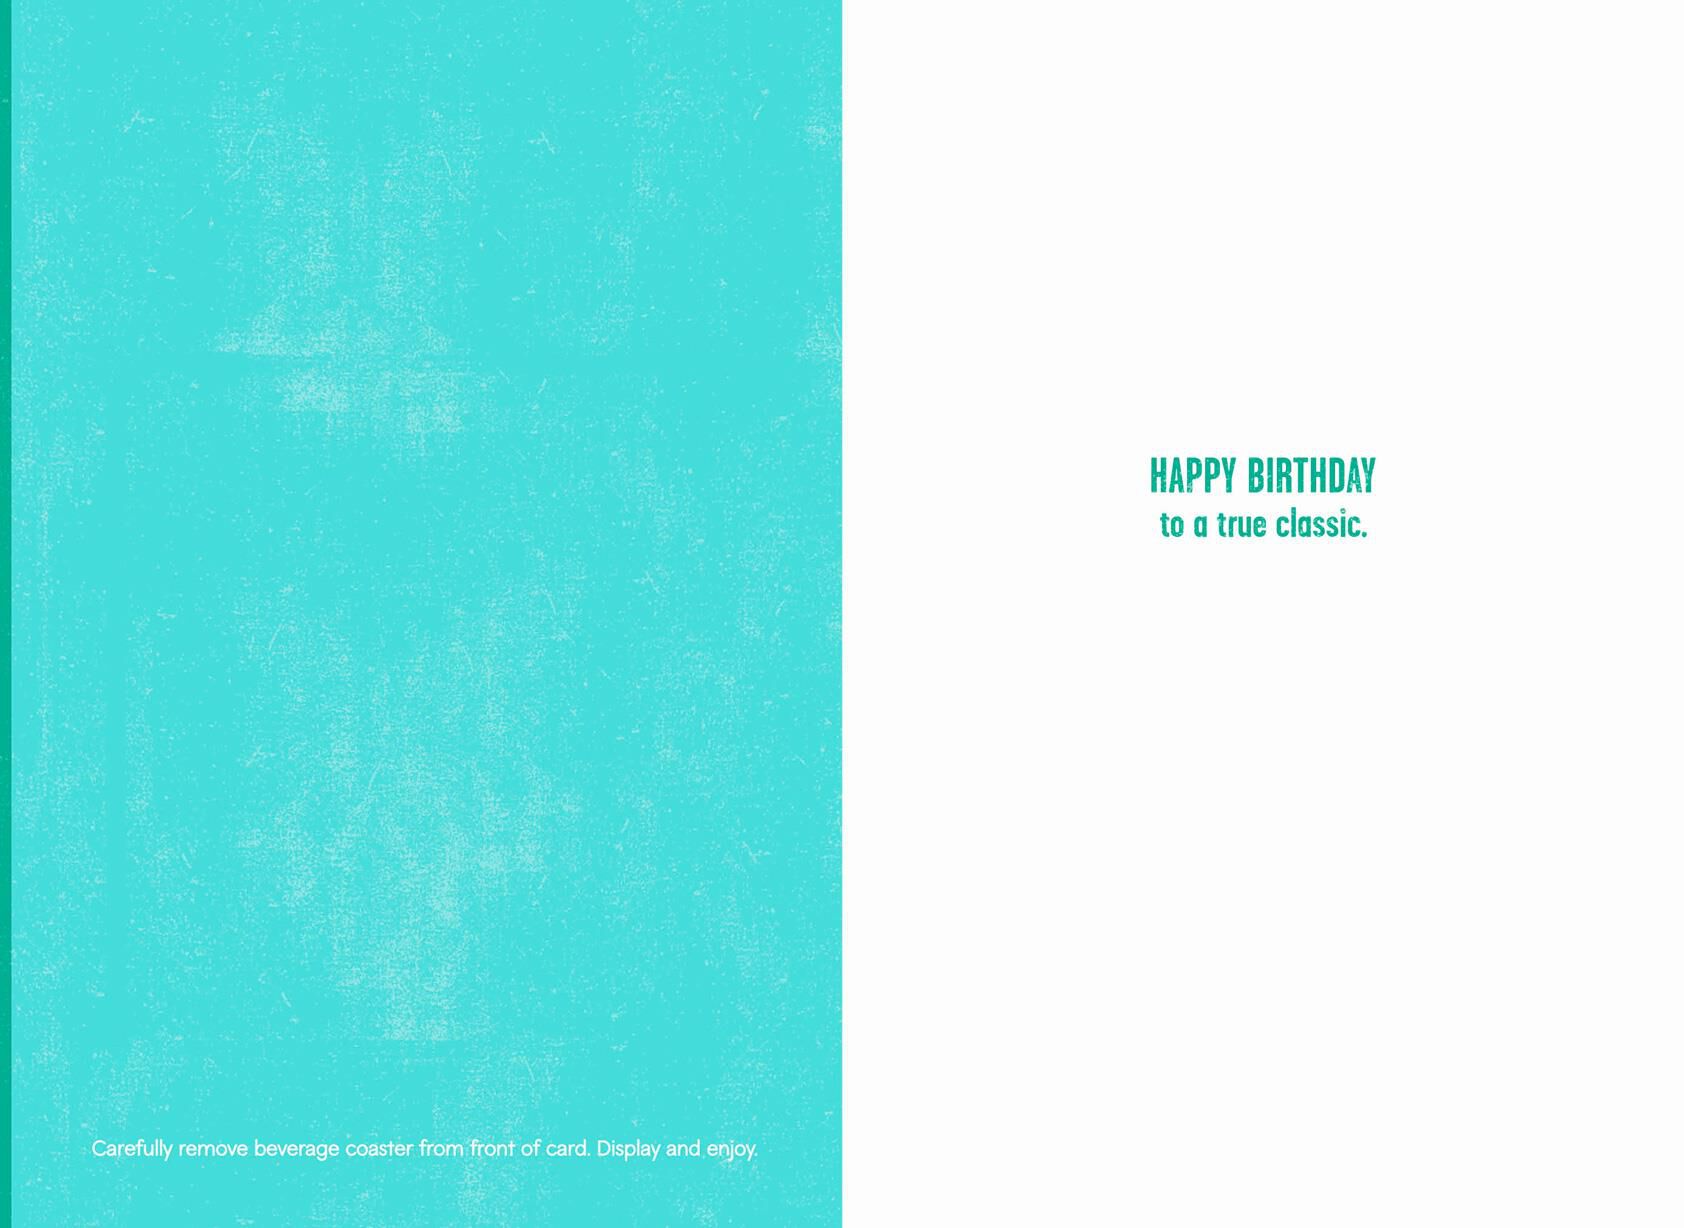 Birthday Cards | BDay Cards | Hallmark